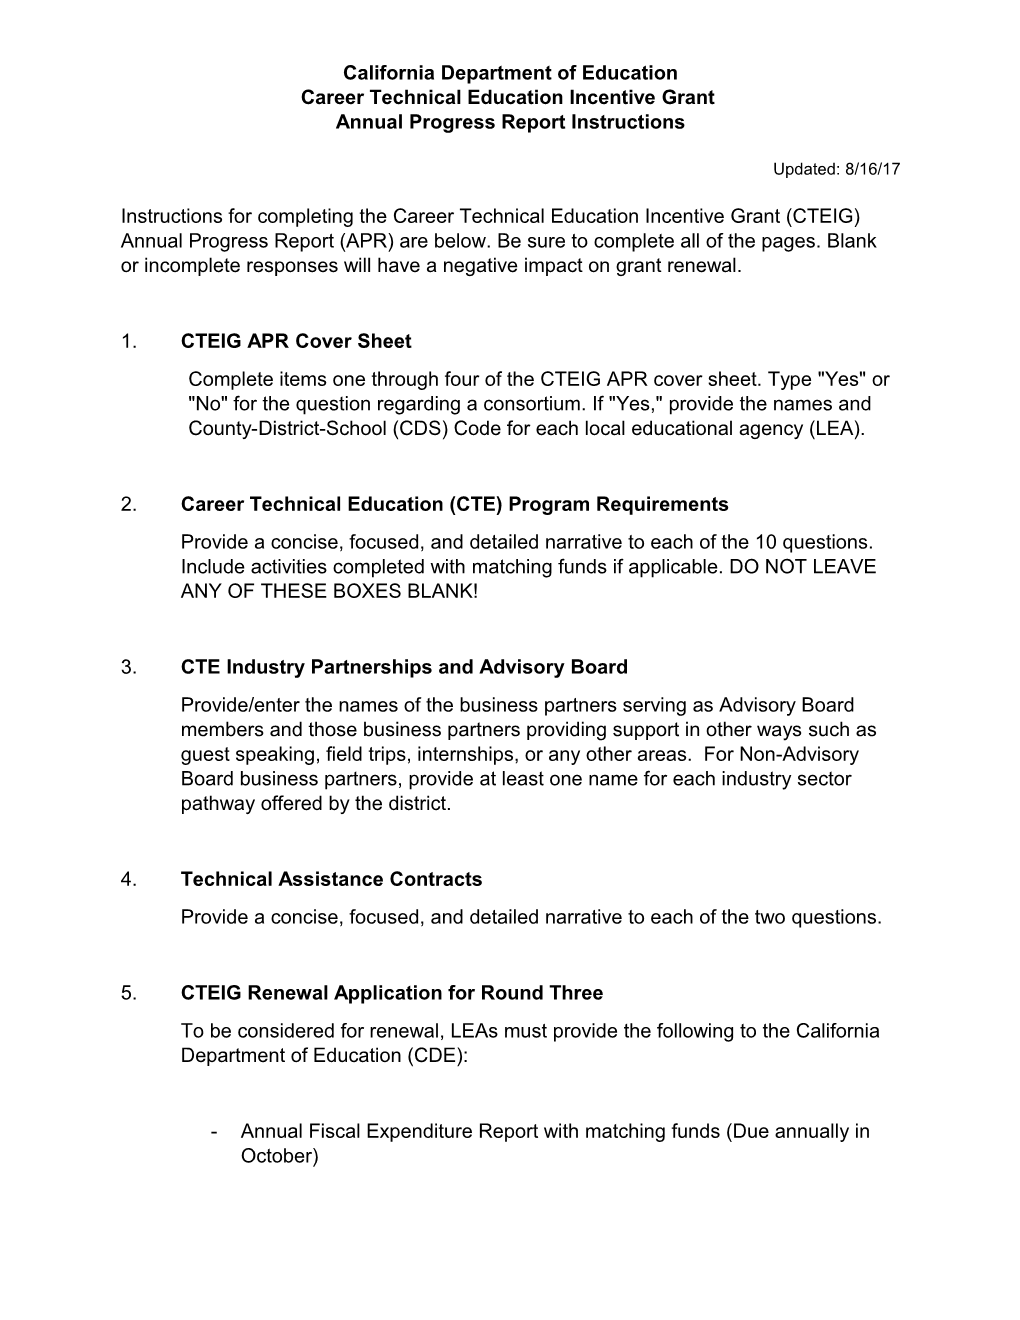 CTEIG Annual Progress Report - Perkins (CA Dept of Education)